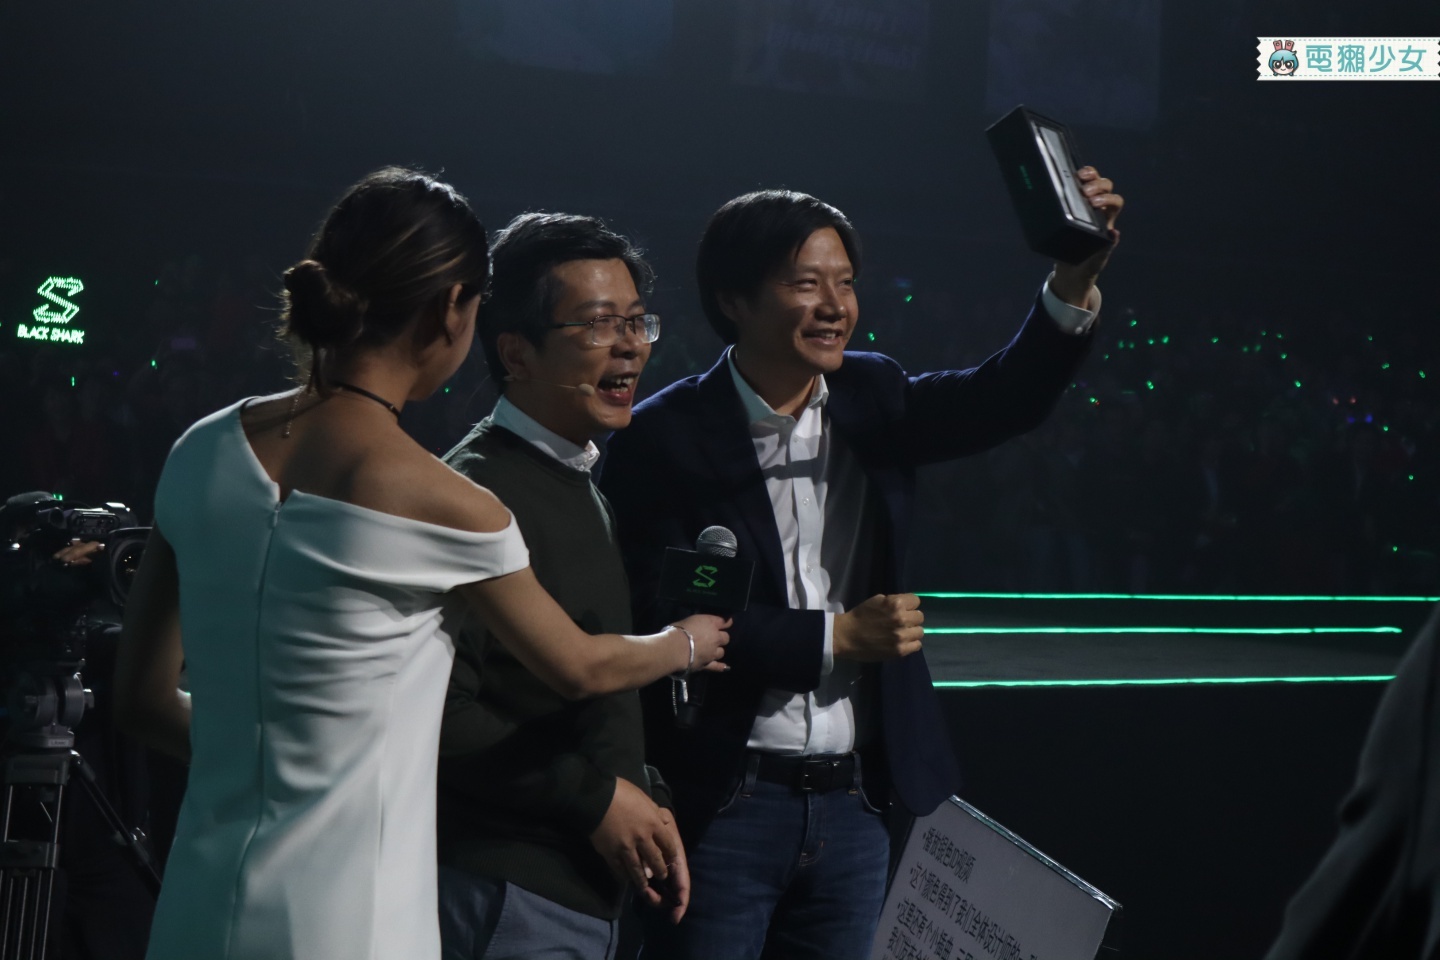 出門｜『黑鯊遊戲手機2』將來台灣！前進北京第一手試玩創新功能＋特色規格報導